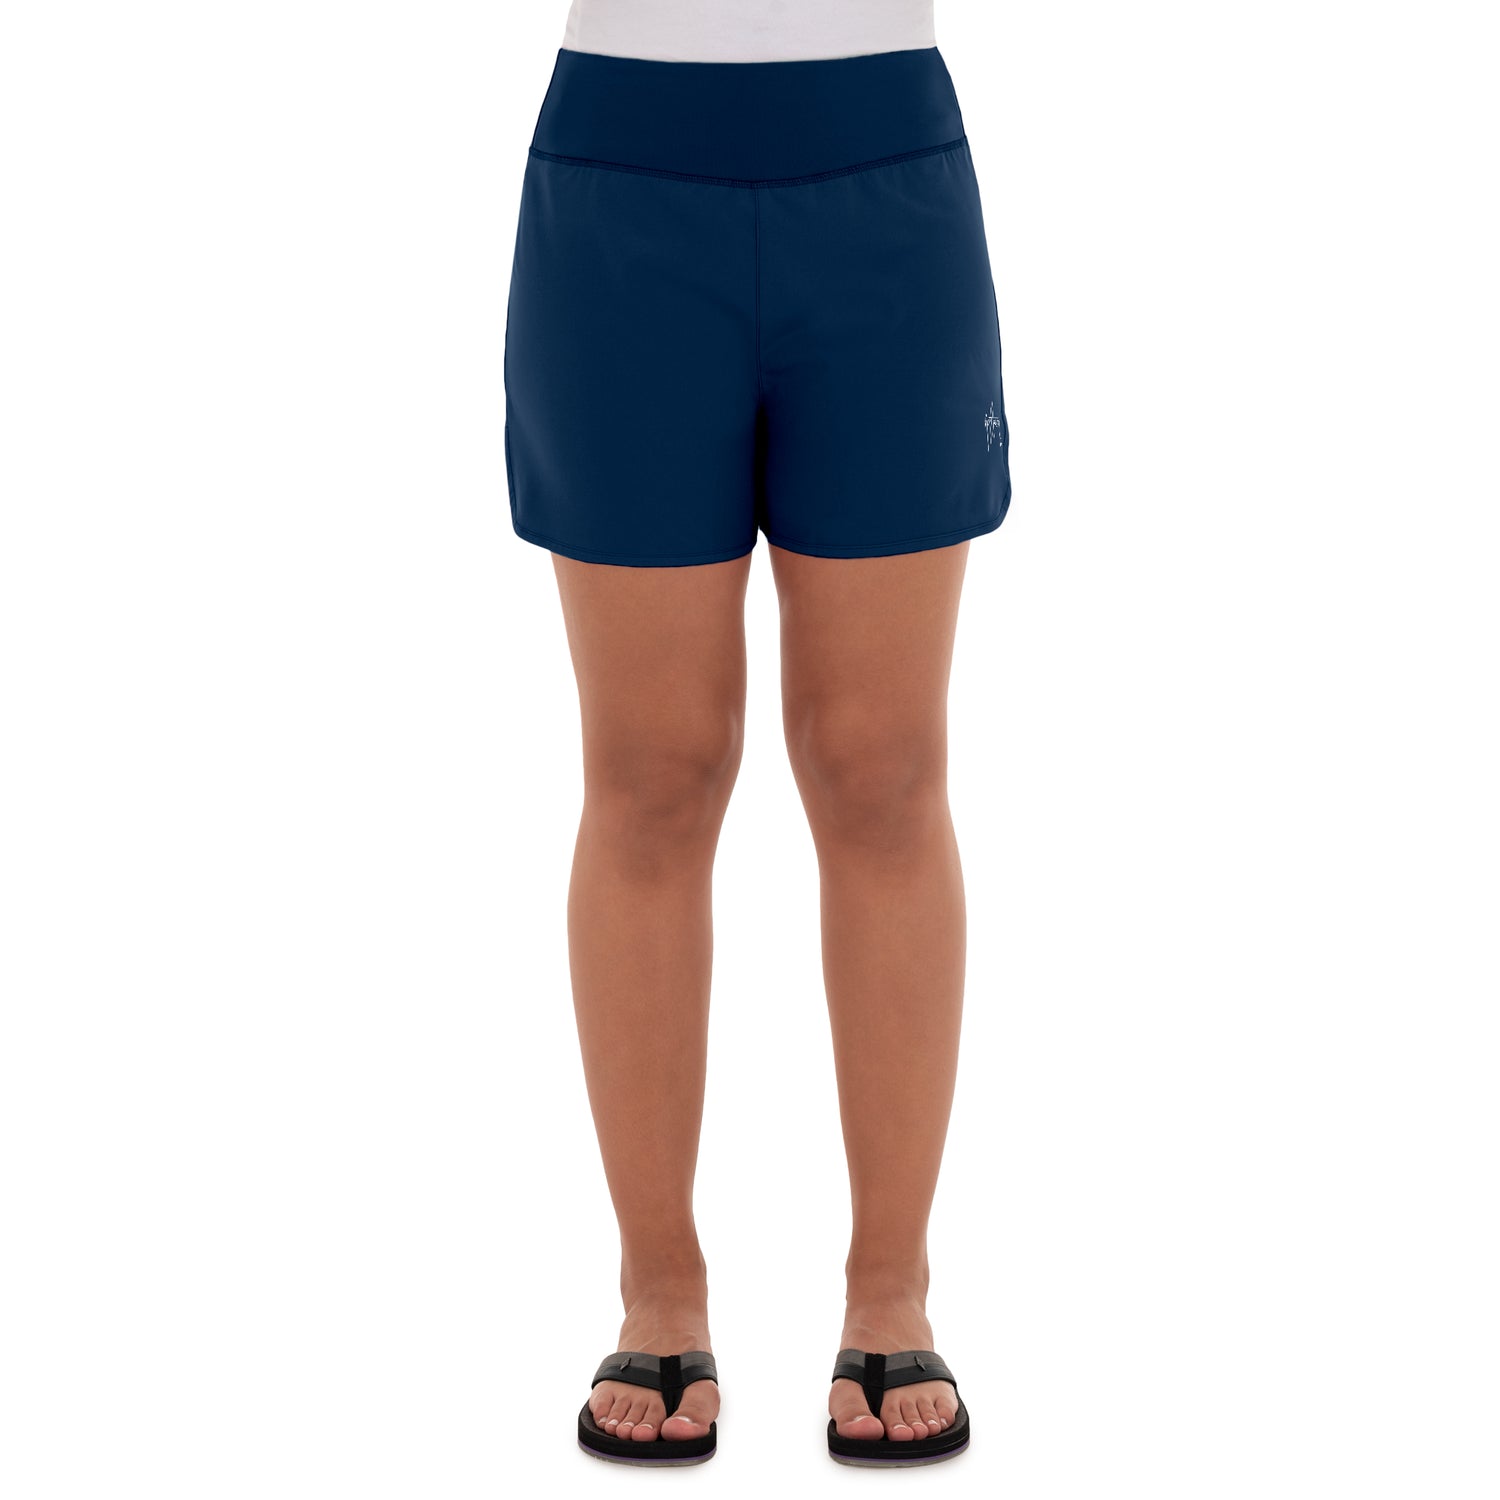 Shorts - women